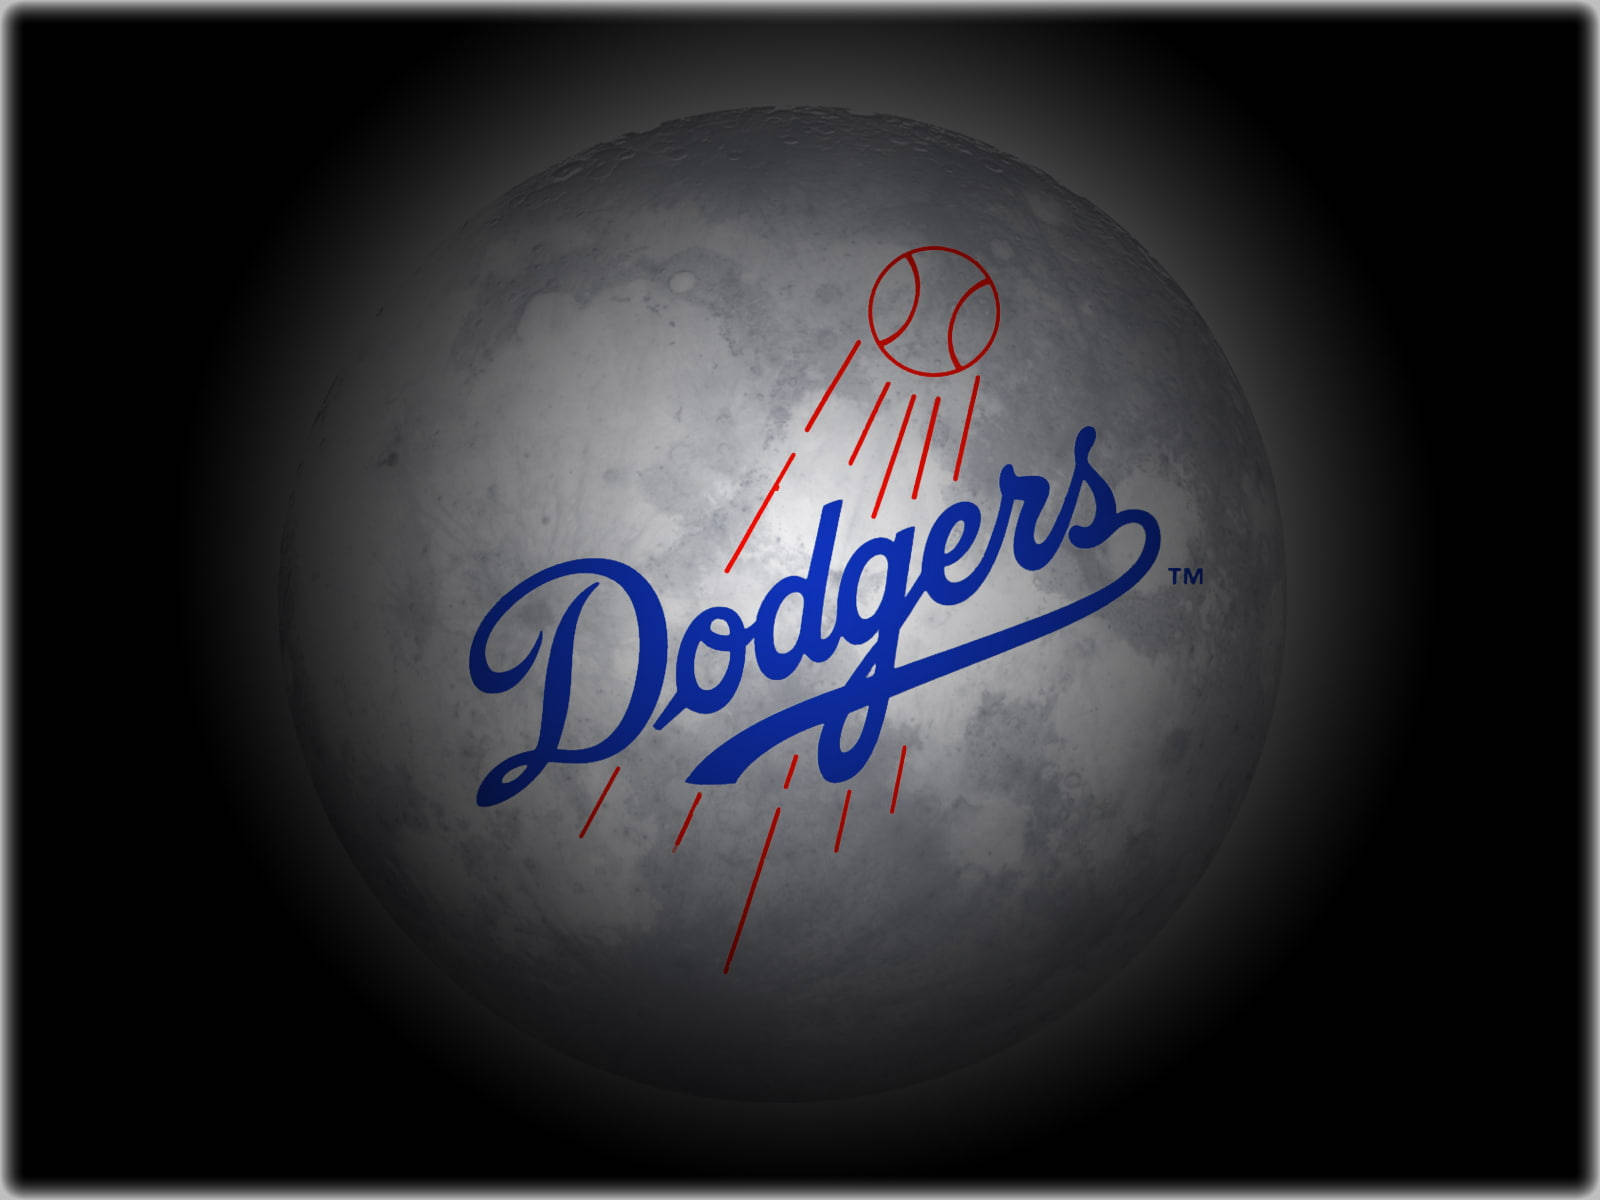 Los angeles dodgers. Dodgers команда. Лос-Анджелес Доджерс. Логотип бейсбольной команды Доджерс. Лос Анджелес Доджерс лого.